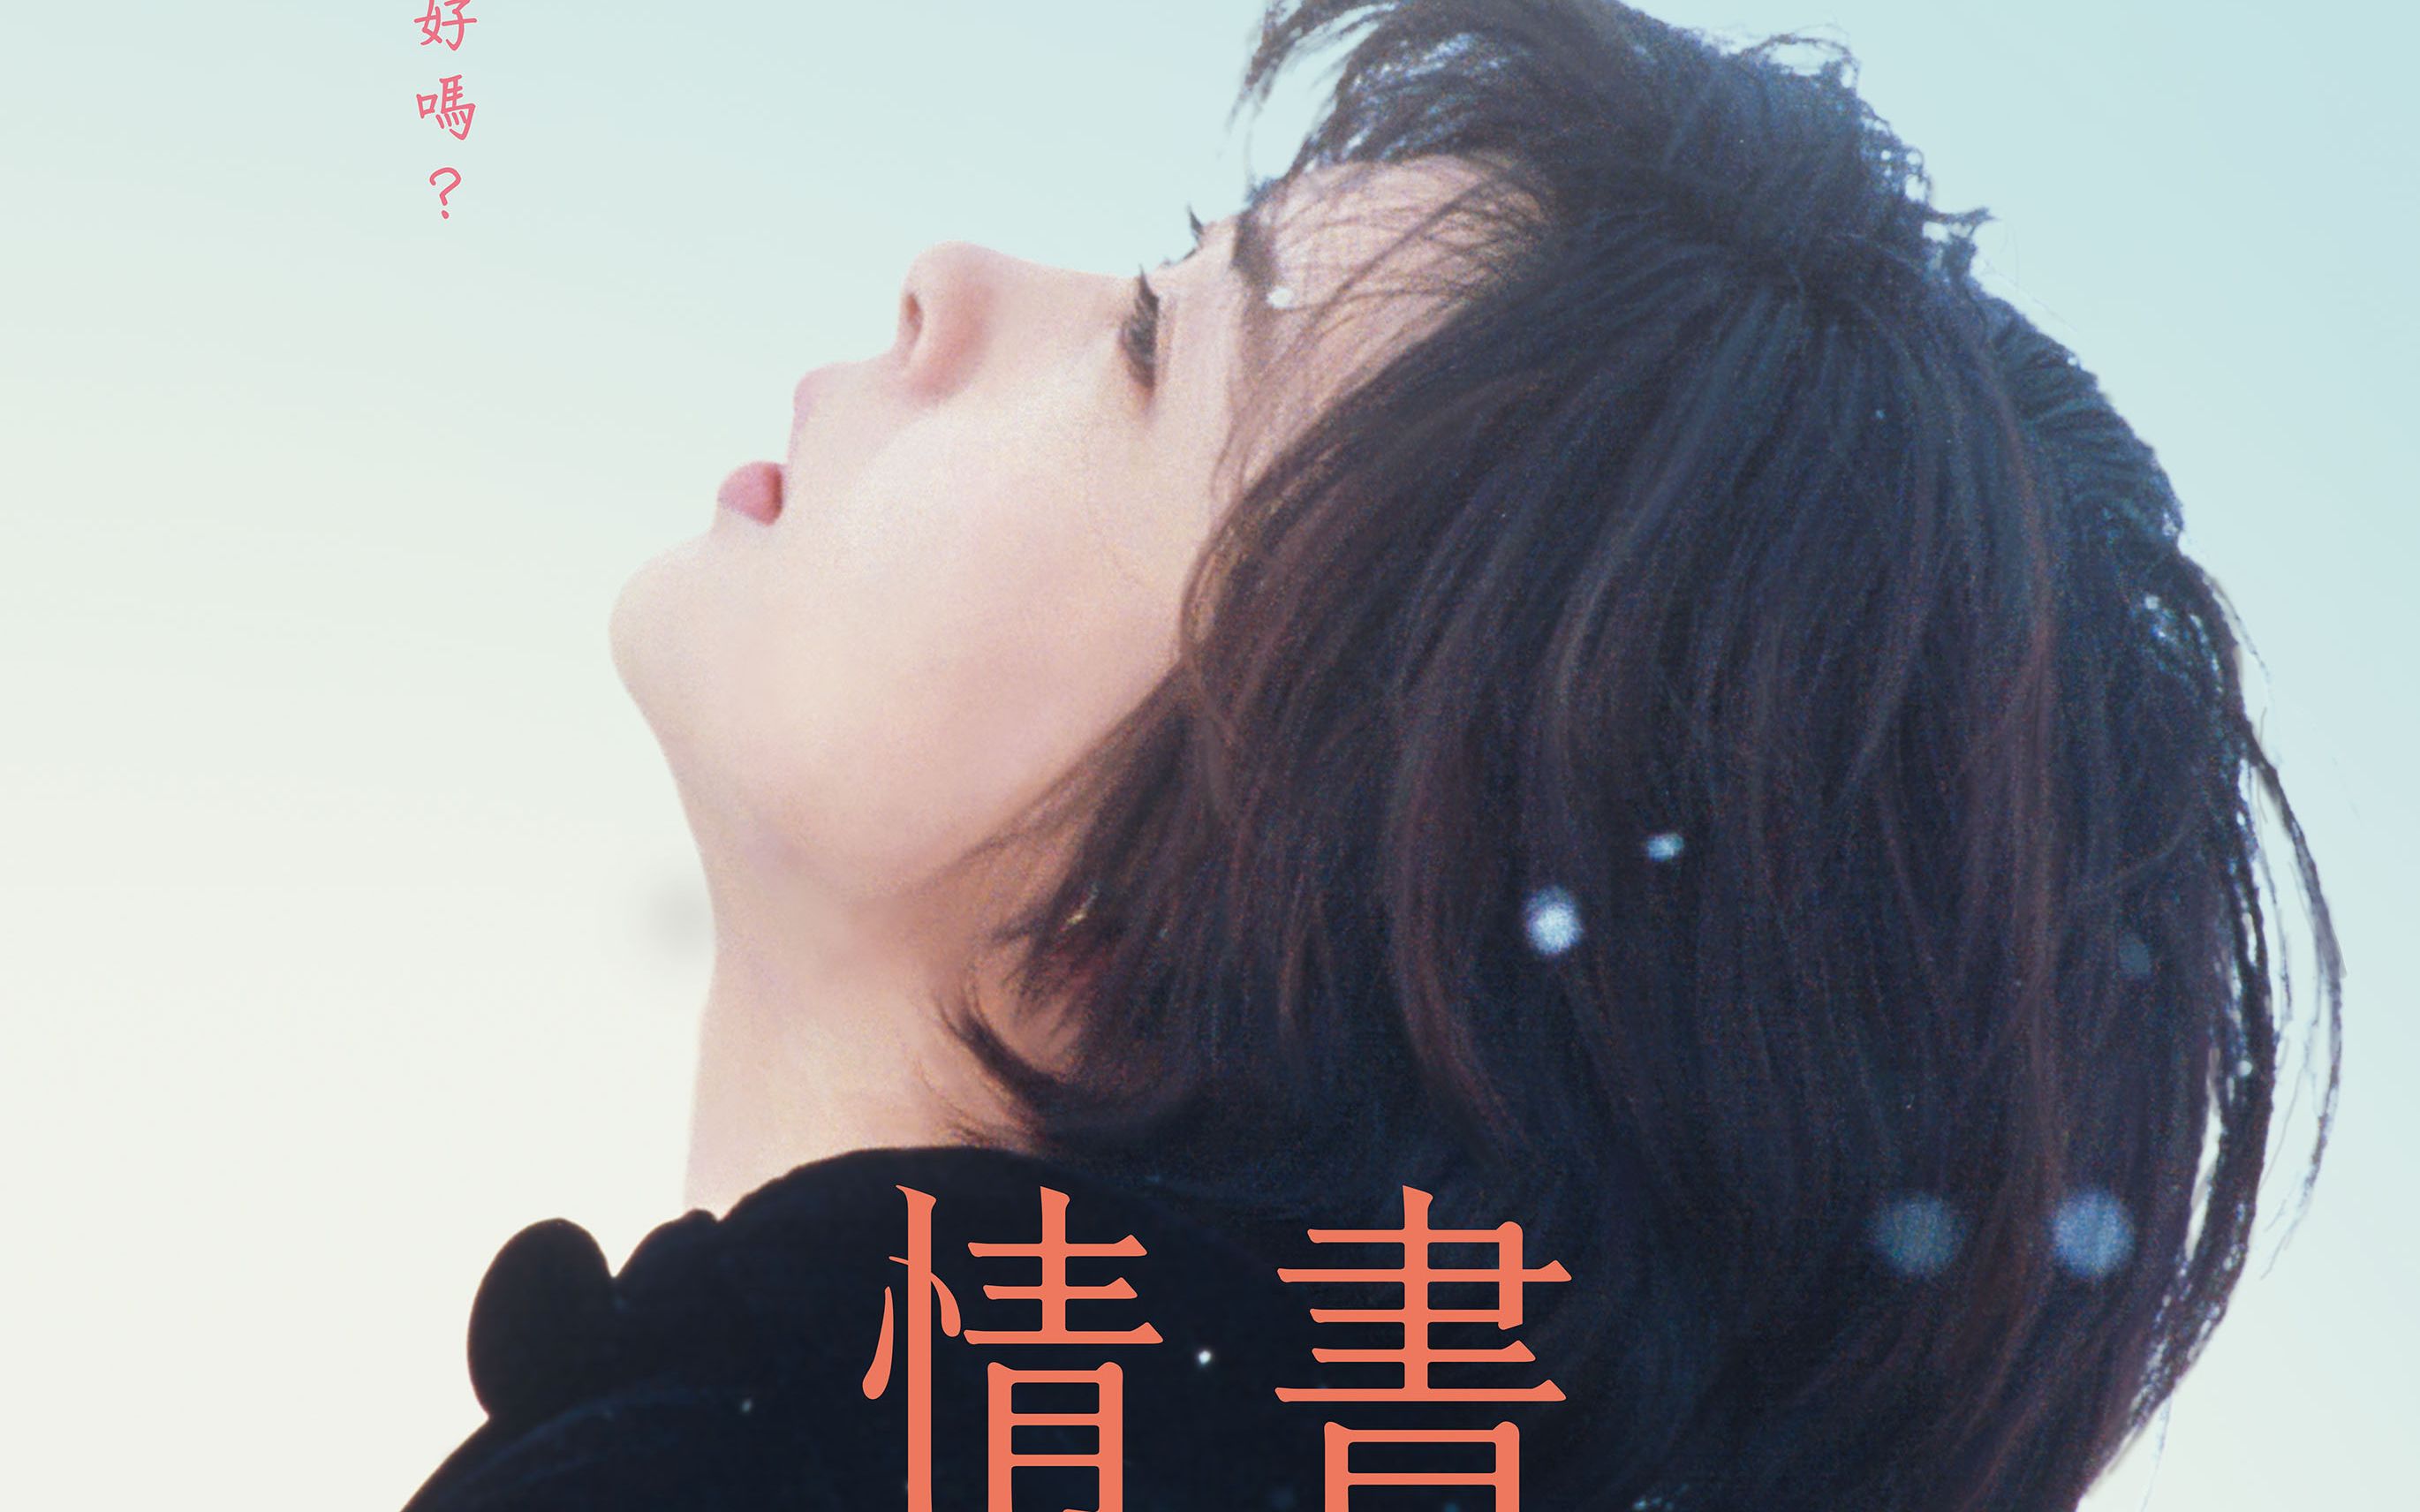 日本电影《情书》海报图片